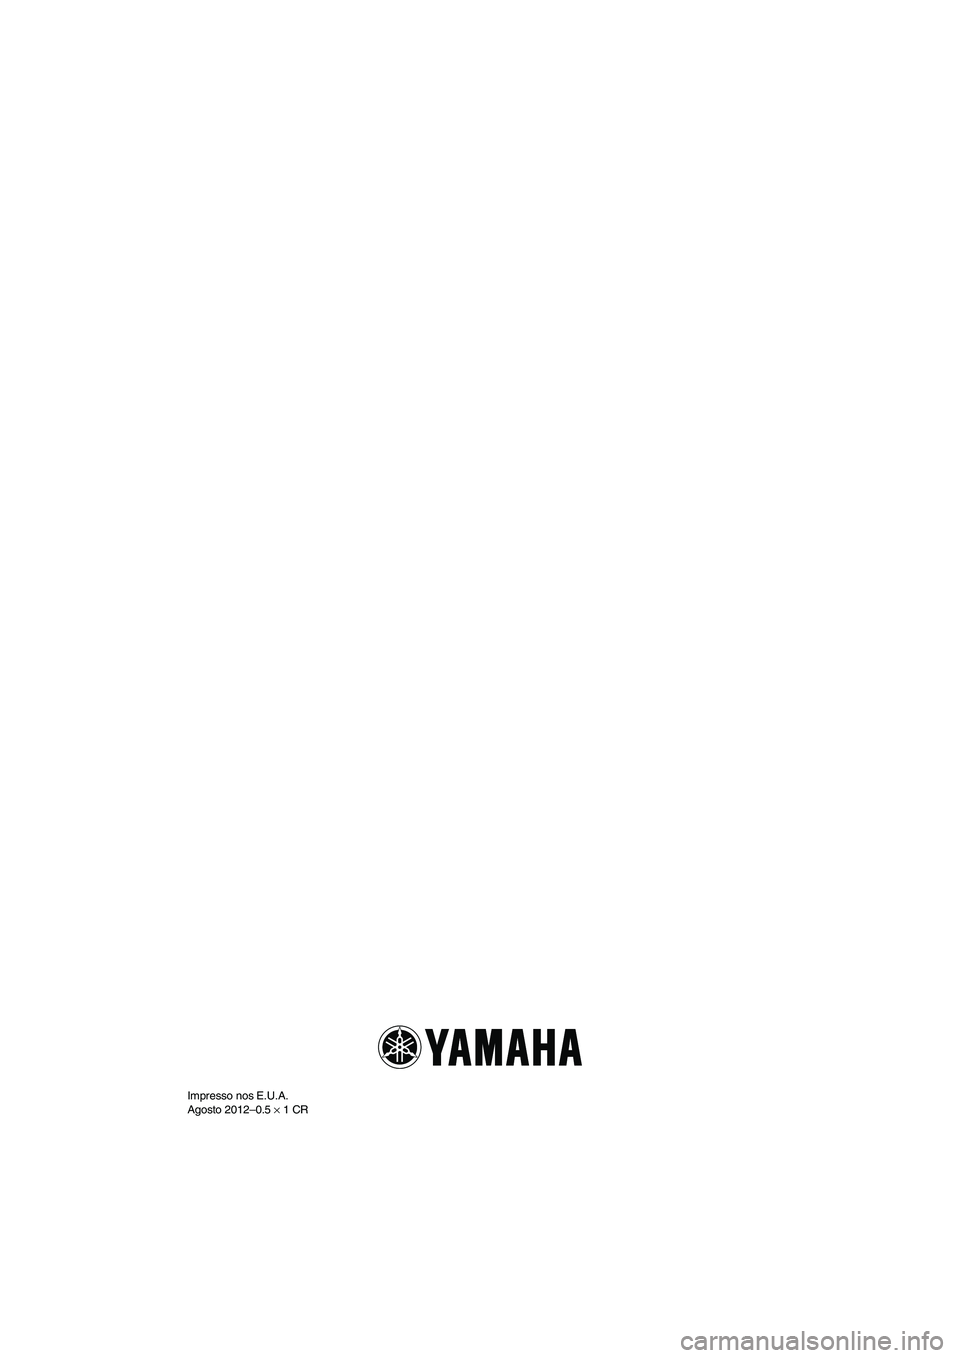 YAMAHA VX SPORT 2013  Manual de utilização (in Portuguese) Impresso nos E.U.A.
Agosto 2012–0.5 × 1 CR
UF2P70P0.book  Page 1  Tuesday, July 24, 2012  11:54 AM 